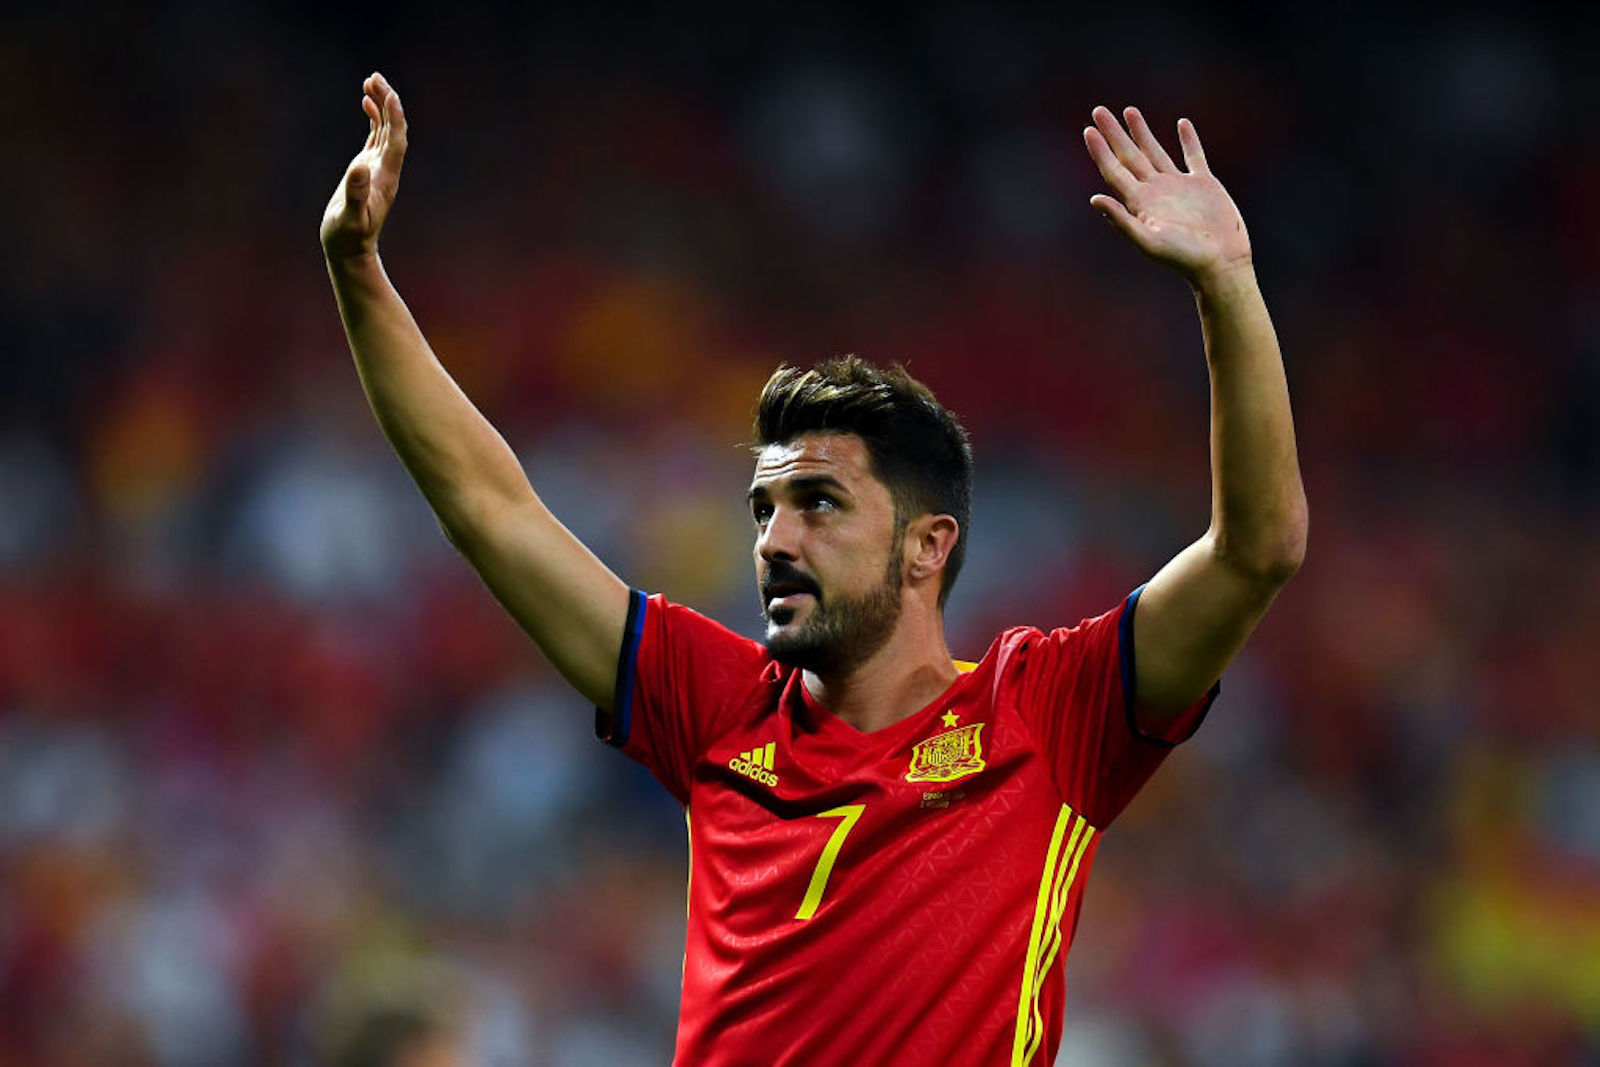 Salida interrumpir Aparador Quiénes son los máximos goleadores de la selección de España en la historia?